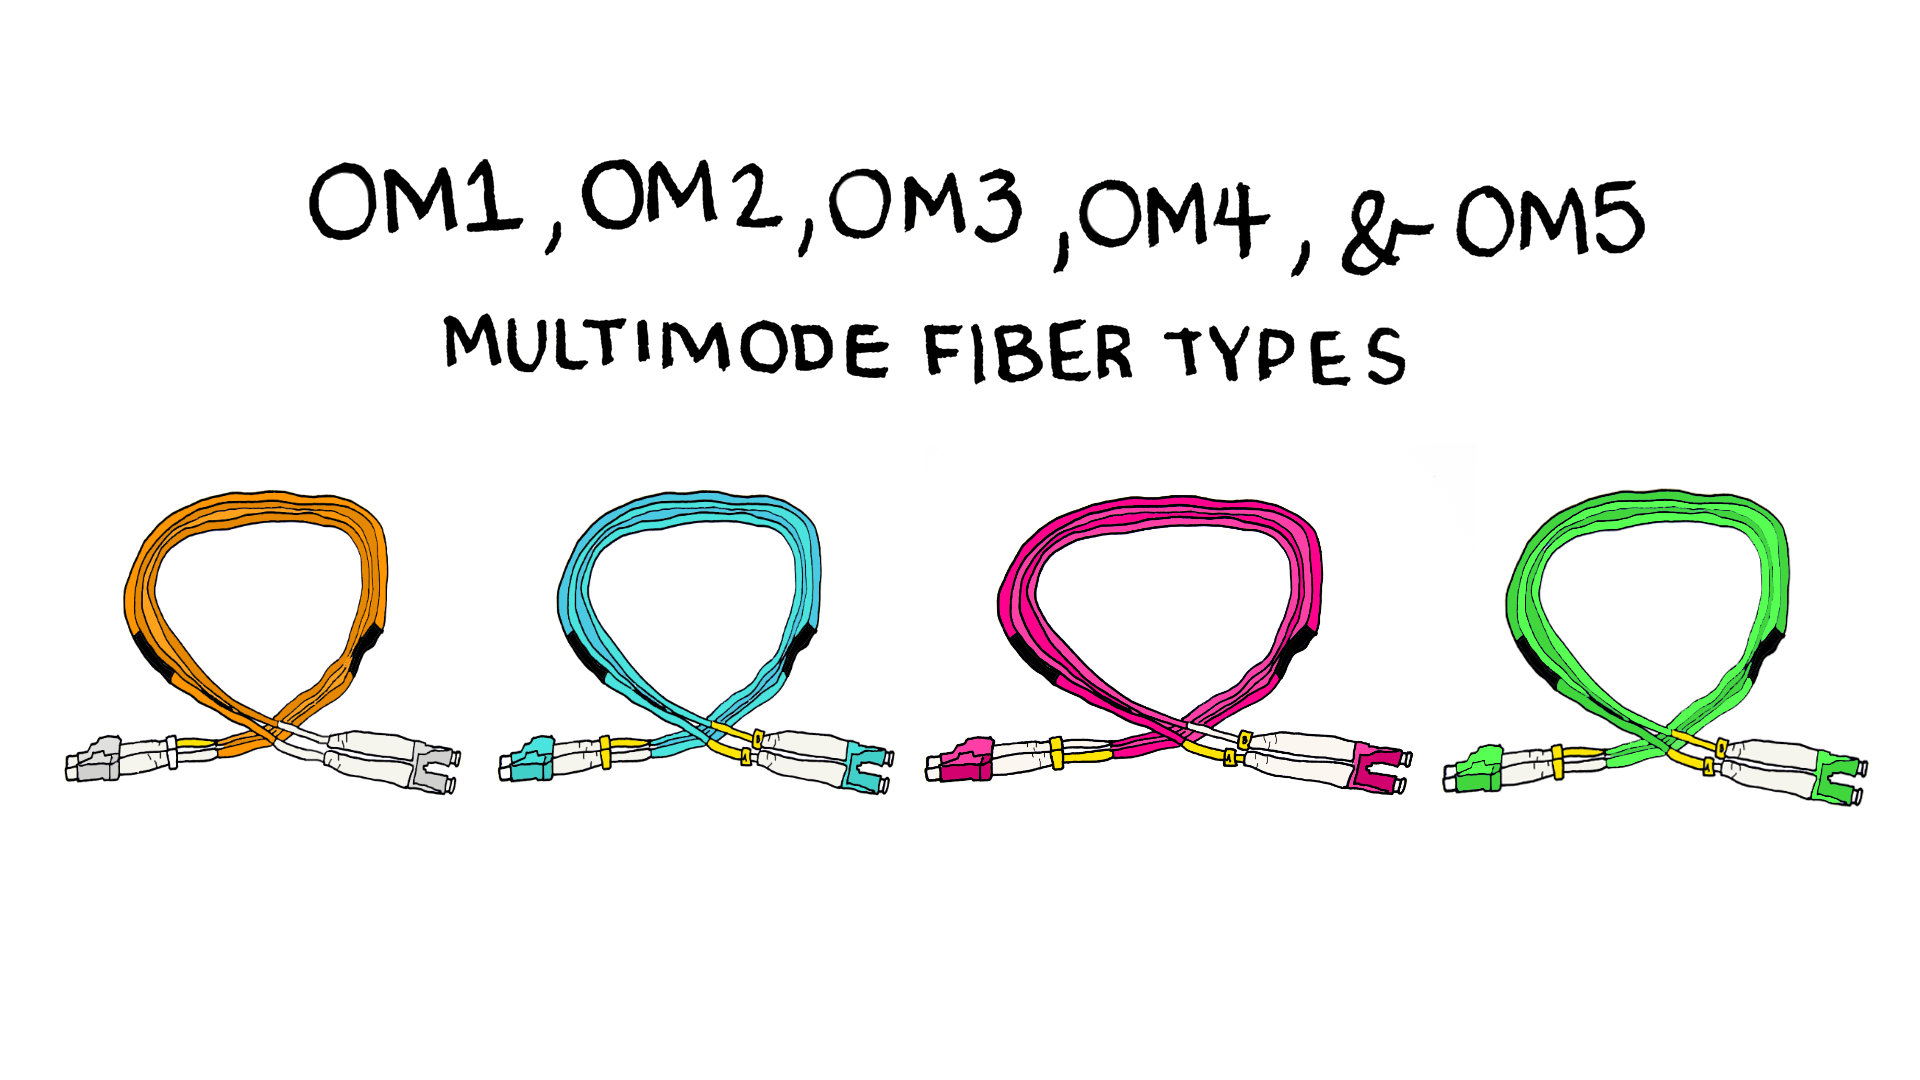 OM1, OM2, OM3, OM4, and OM5 - Multimode Fiber Types